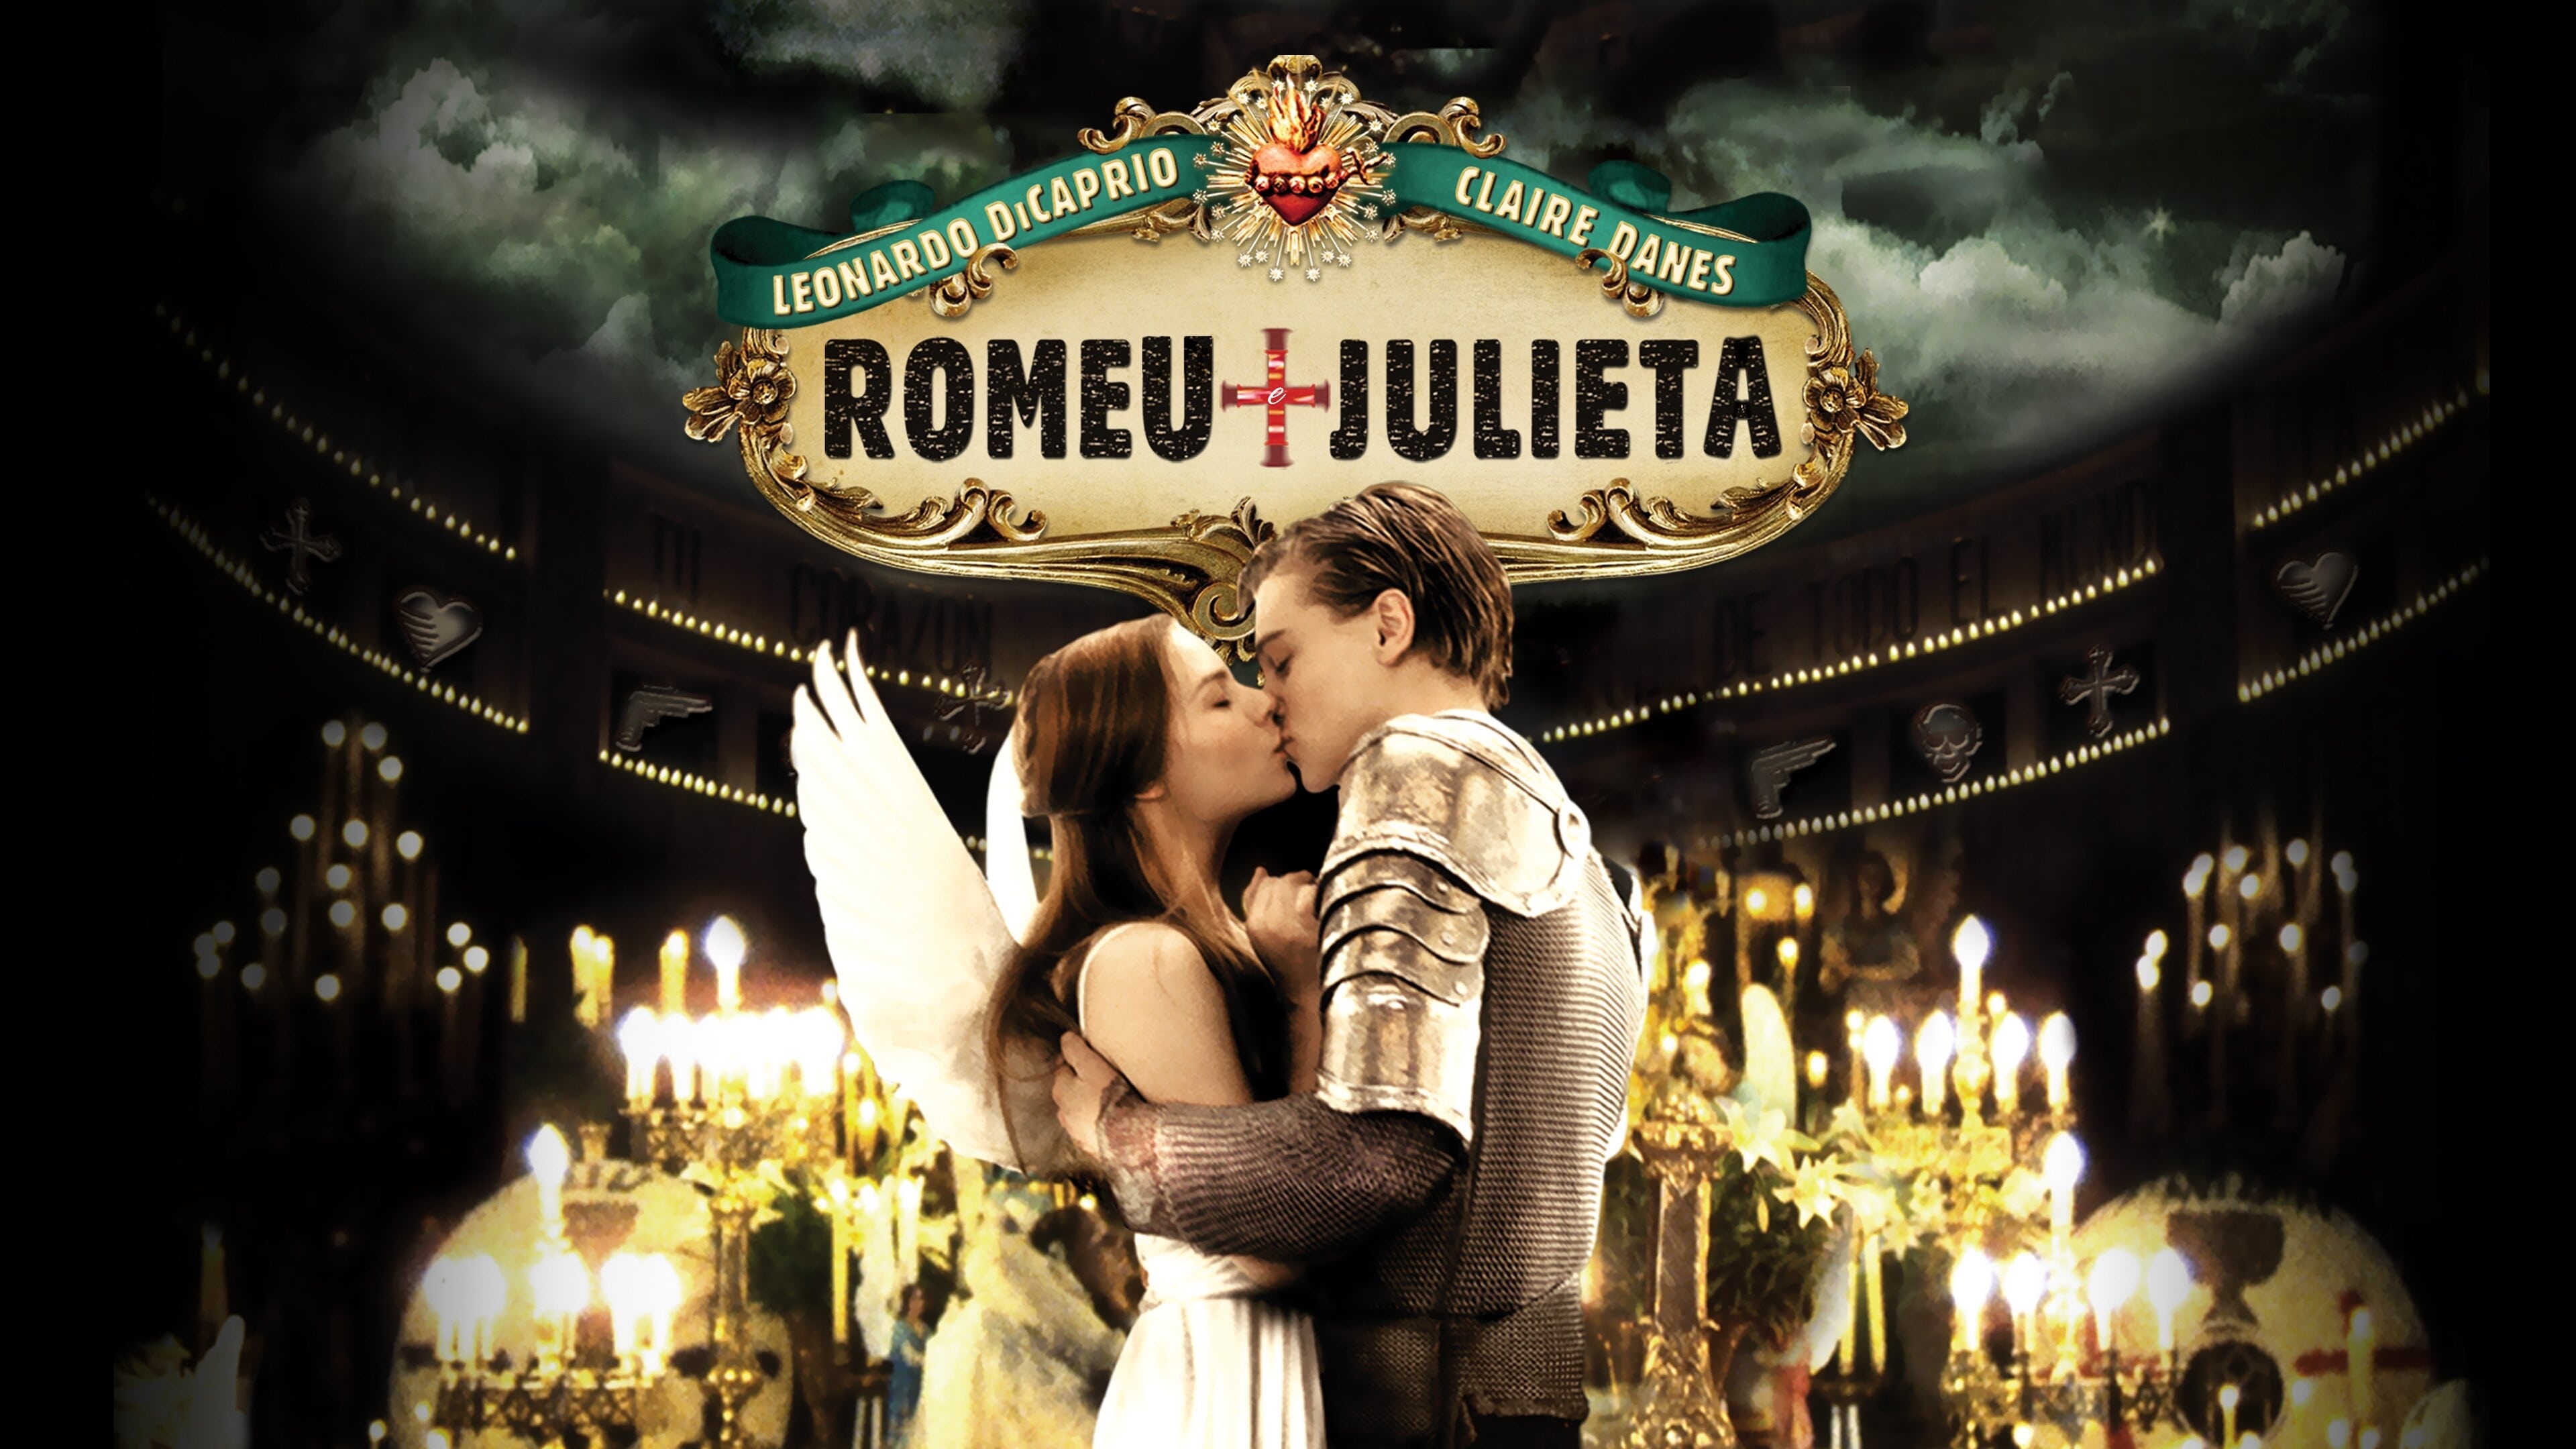 Romeo Juliette Film Gratuit Roméo + Juliette Film Complet en Streaming HD